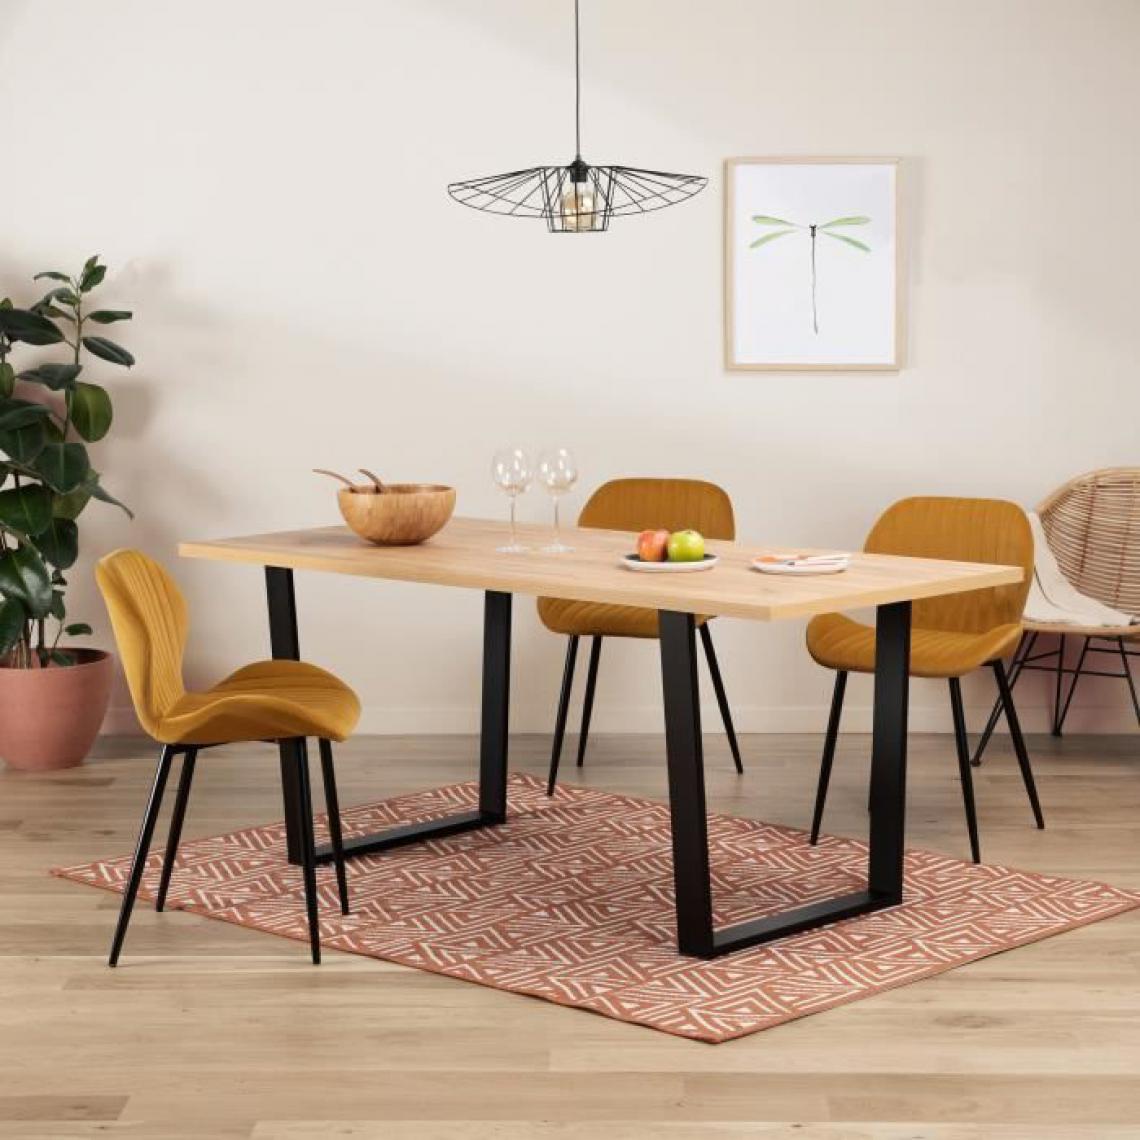 Cstore - Table à manger - Décor chêne - Pieds en métal noir - L 180 x P 85 x H 74,5 cm - INDUSTRY - Tables à manger